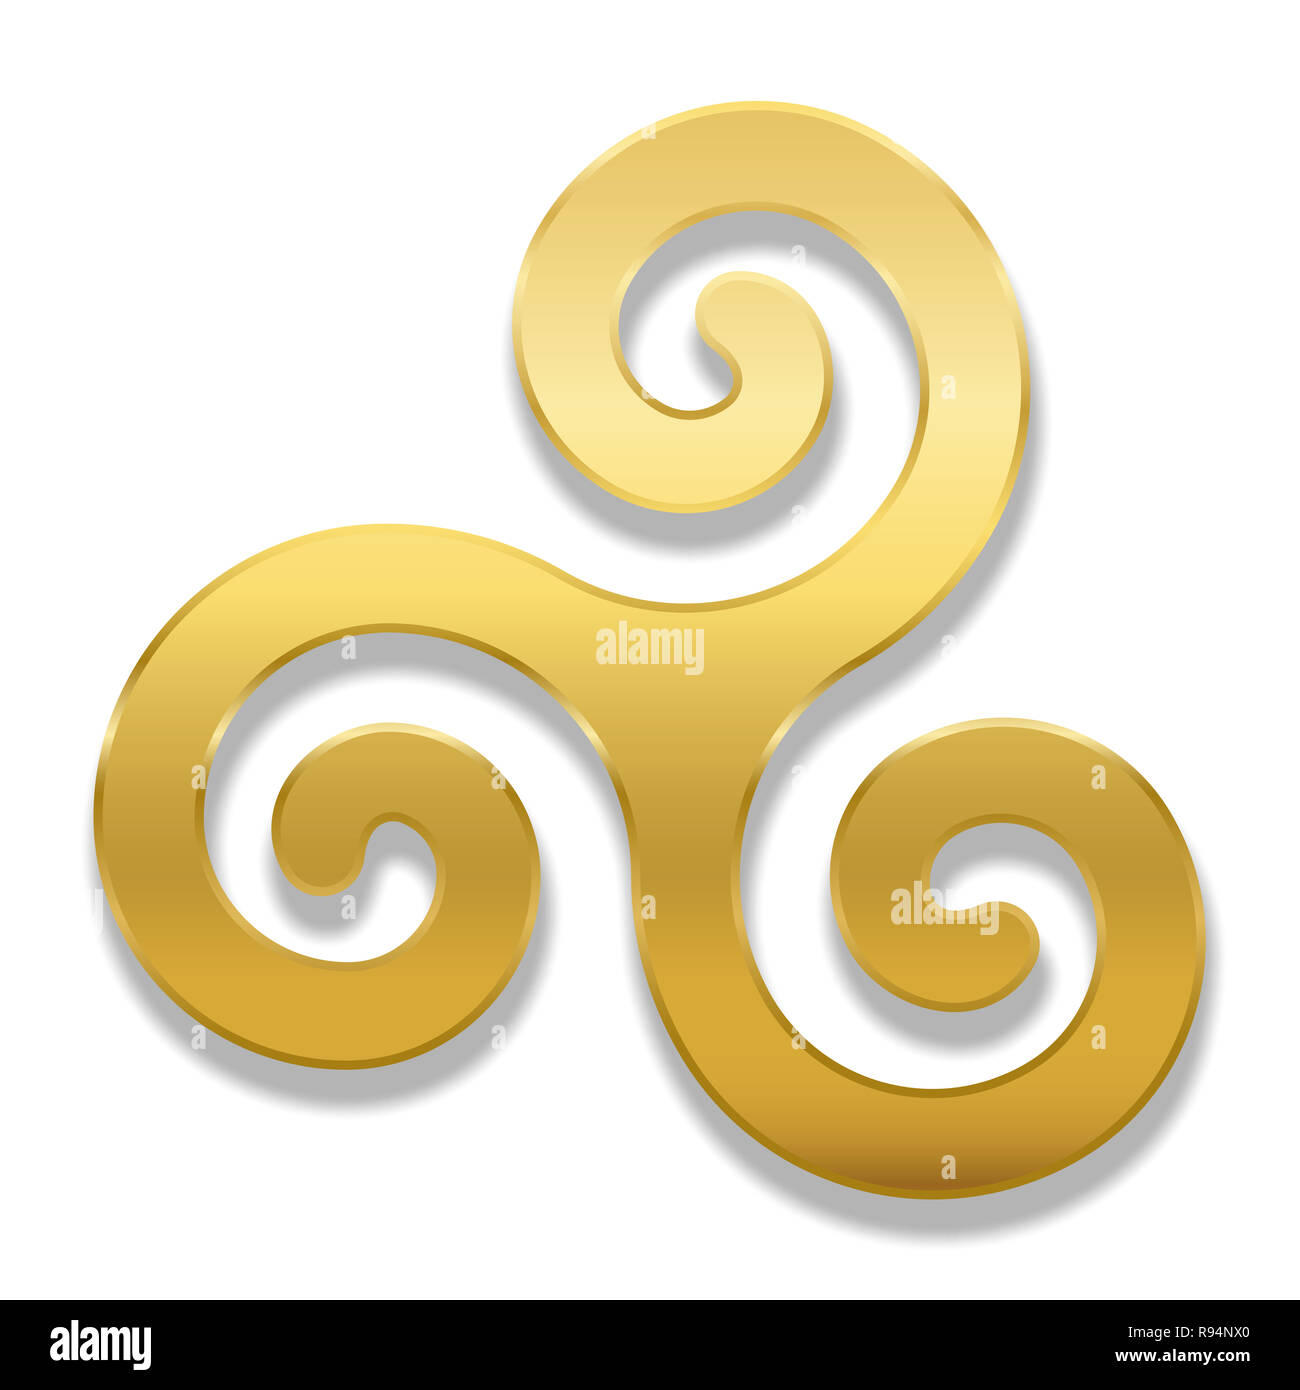 Spirale celtique triskele doré sur fond blanc. Le Triskèle. Un motif composé d'une spirale triple présentant une symétrie rotationnelle. Banque D'Images